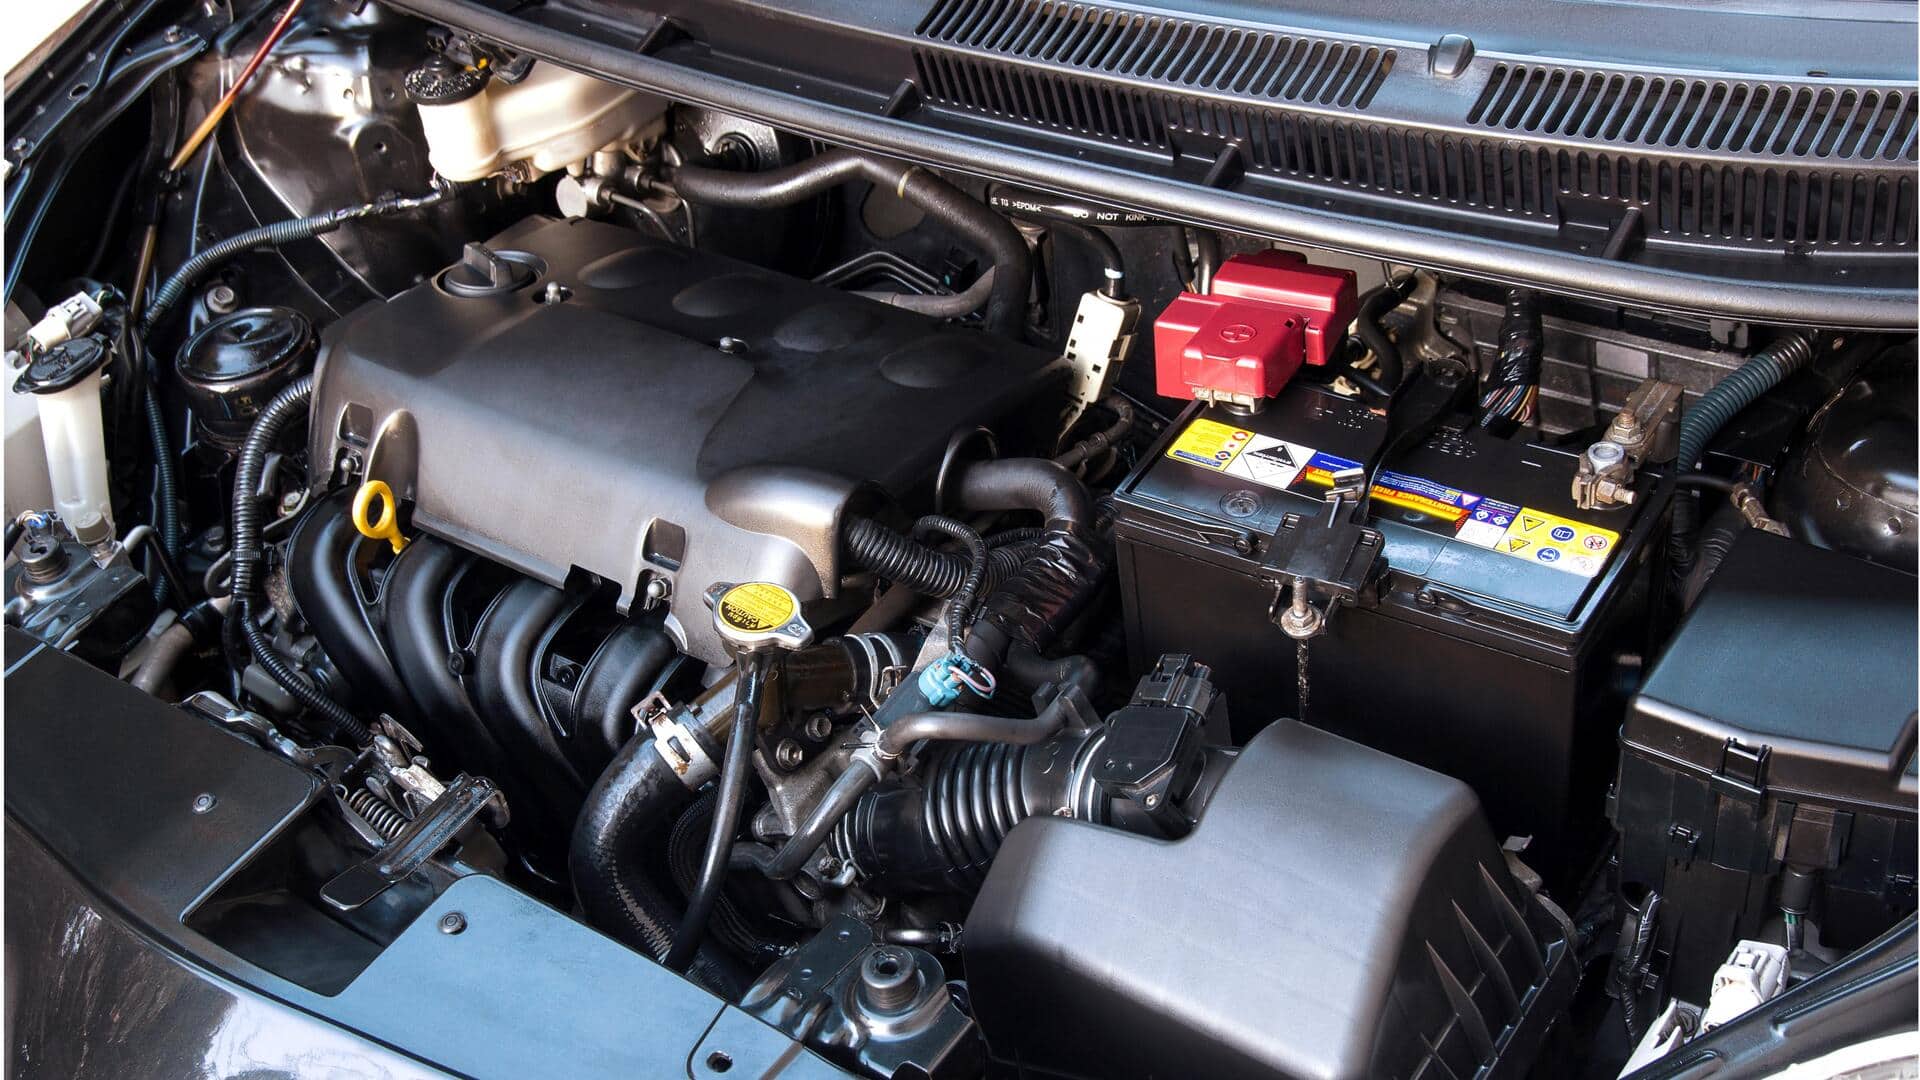 #NewsBytesExplainer: गाड़ियों के इंजन के लिए CC क्यों इस्तेमाल होता है और यह क्या बताता है?